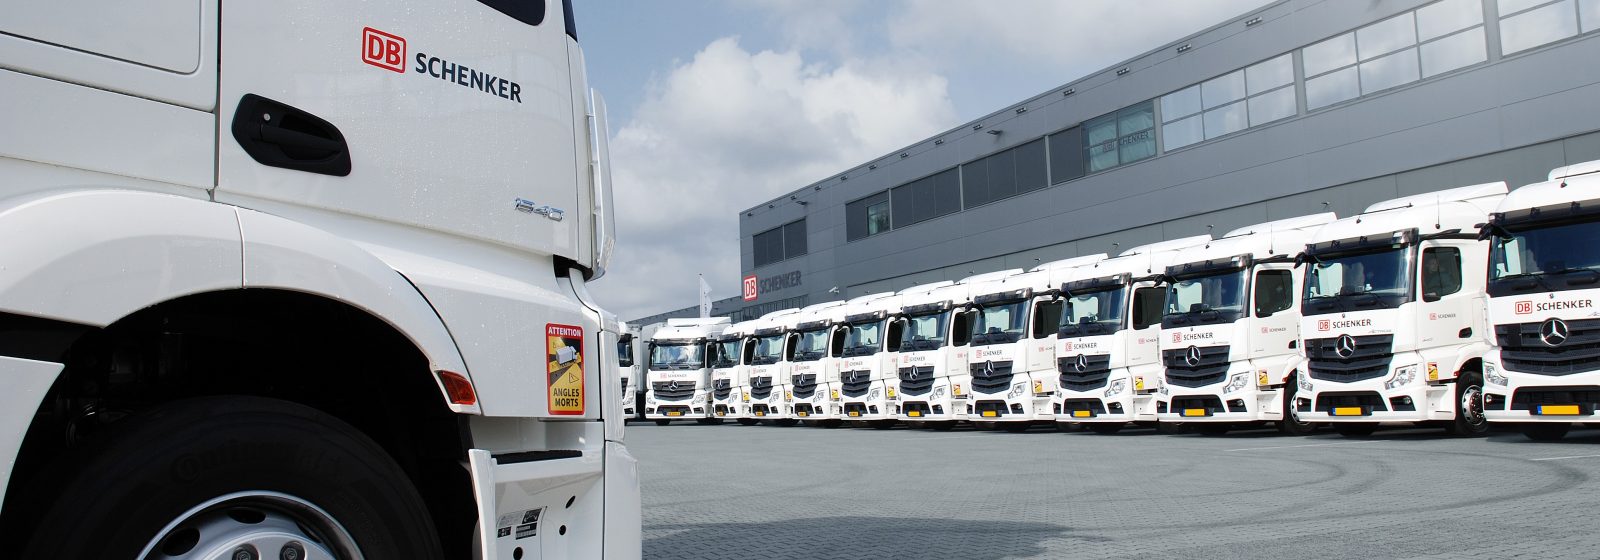 DB Schenker Benelux zet Mercedes-Benz Actros-trucks in voor distributie